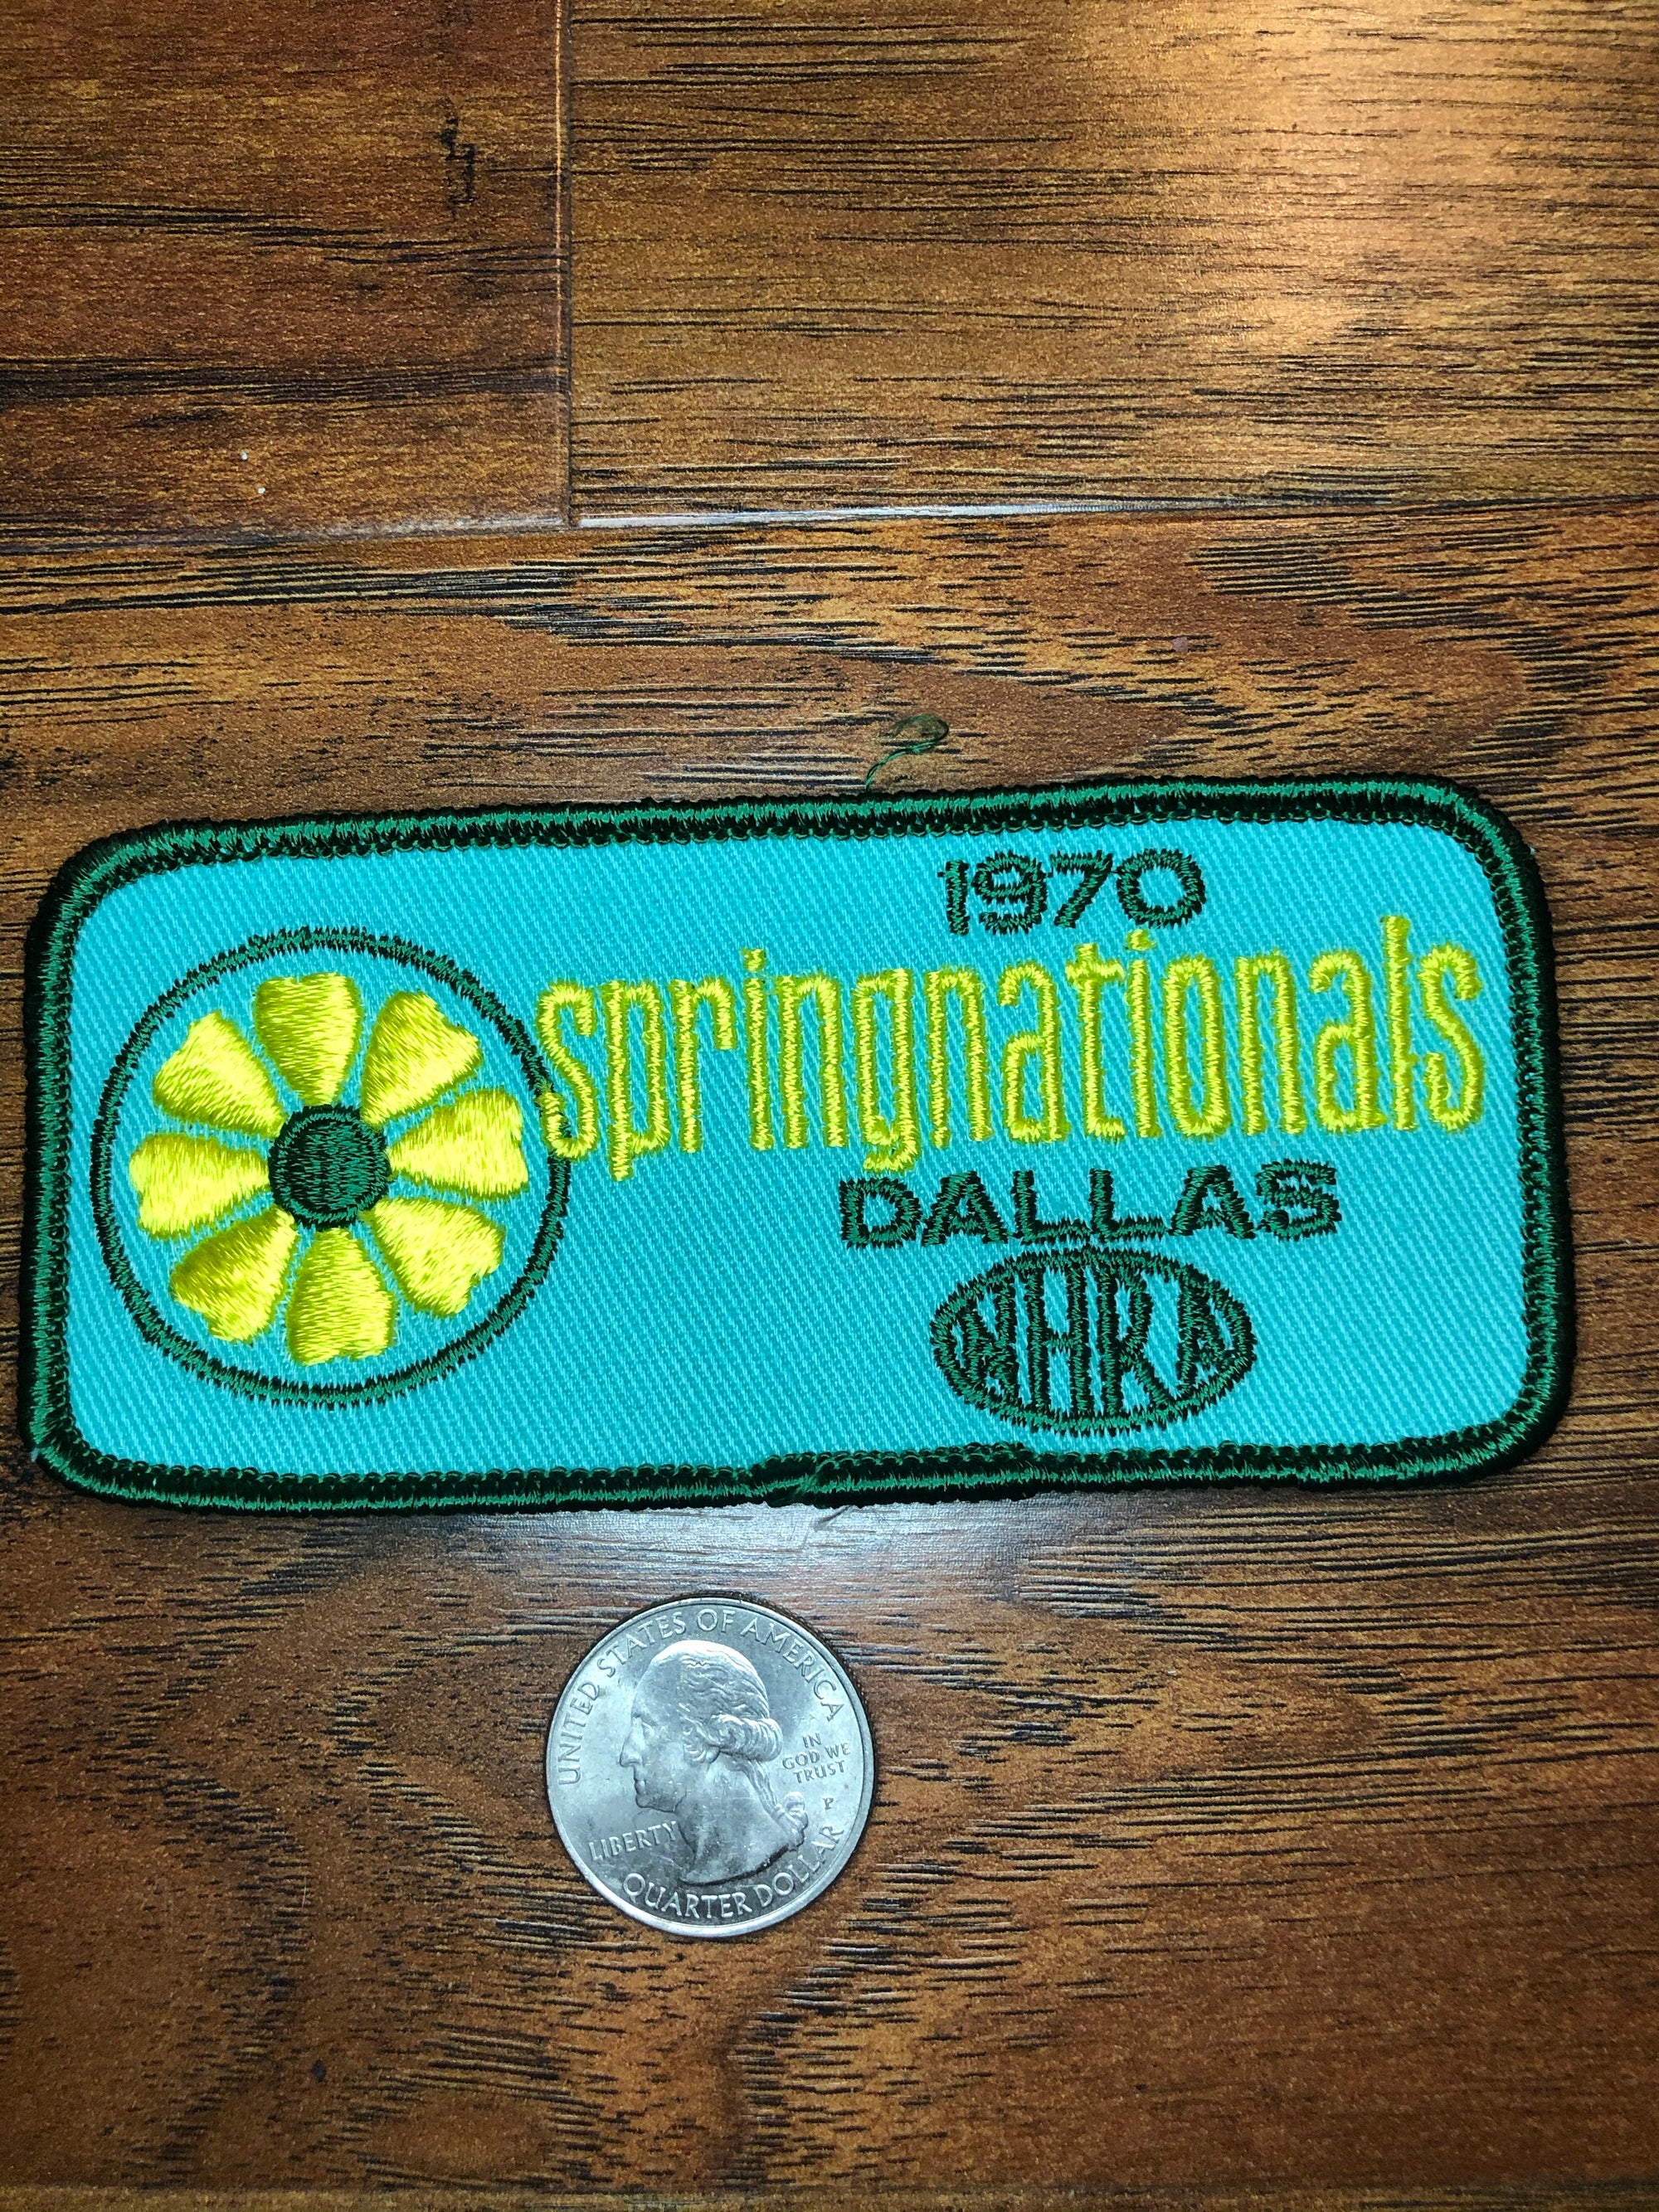 NHRA Vintage 1970 Springnationals Dallas